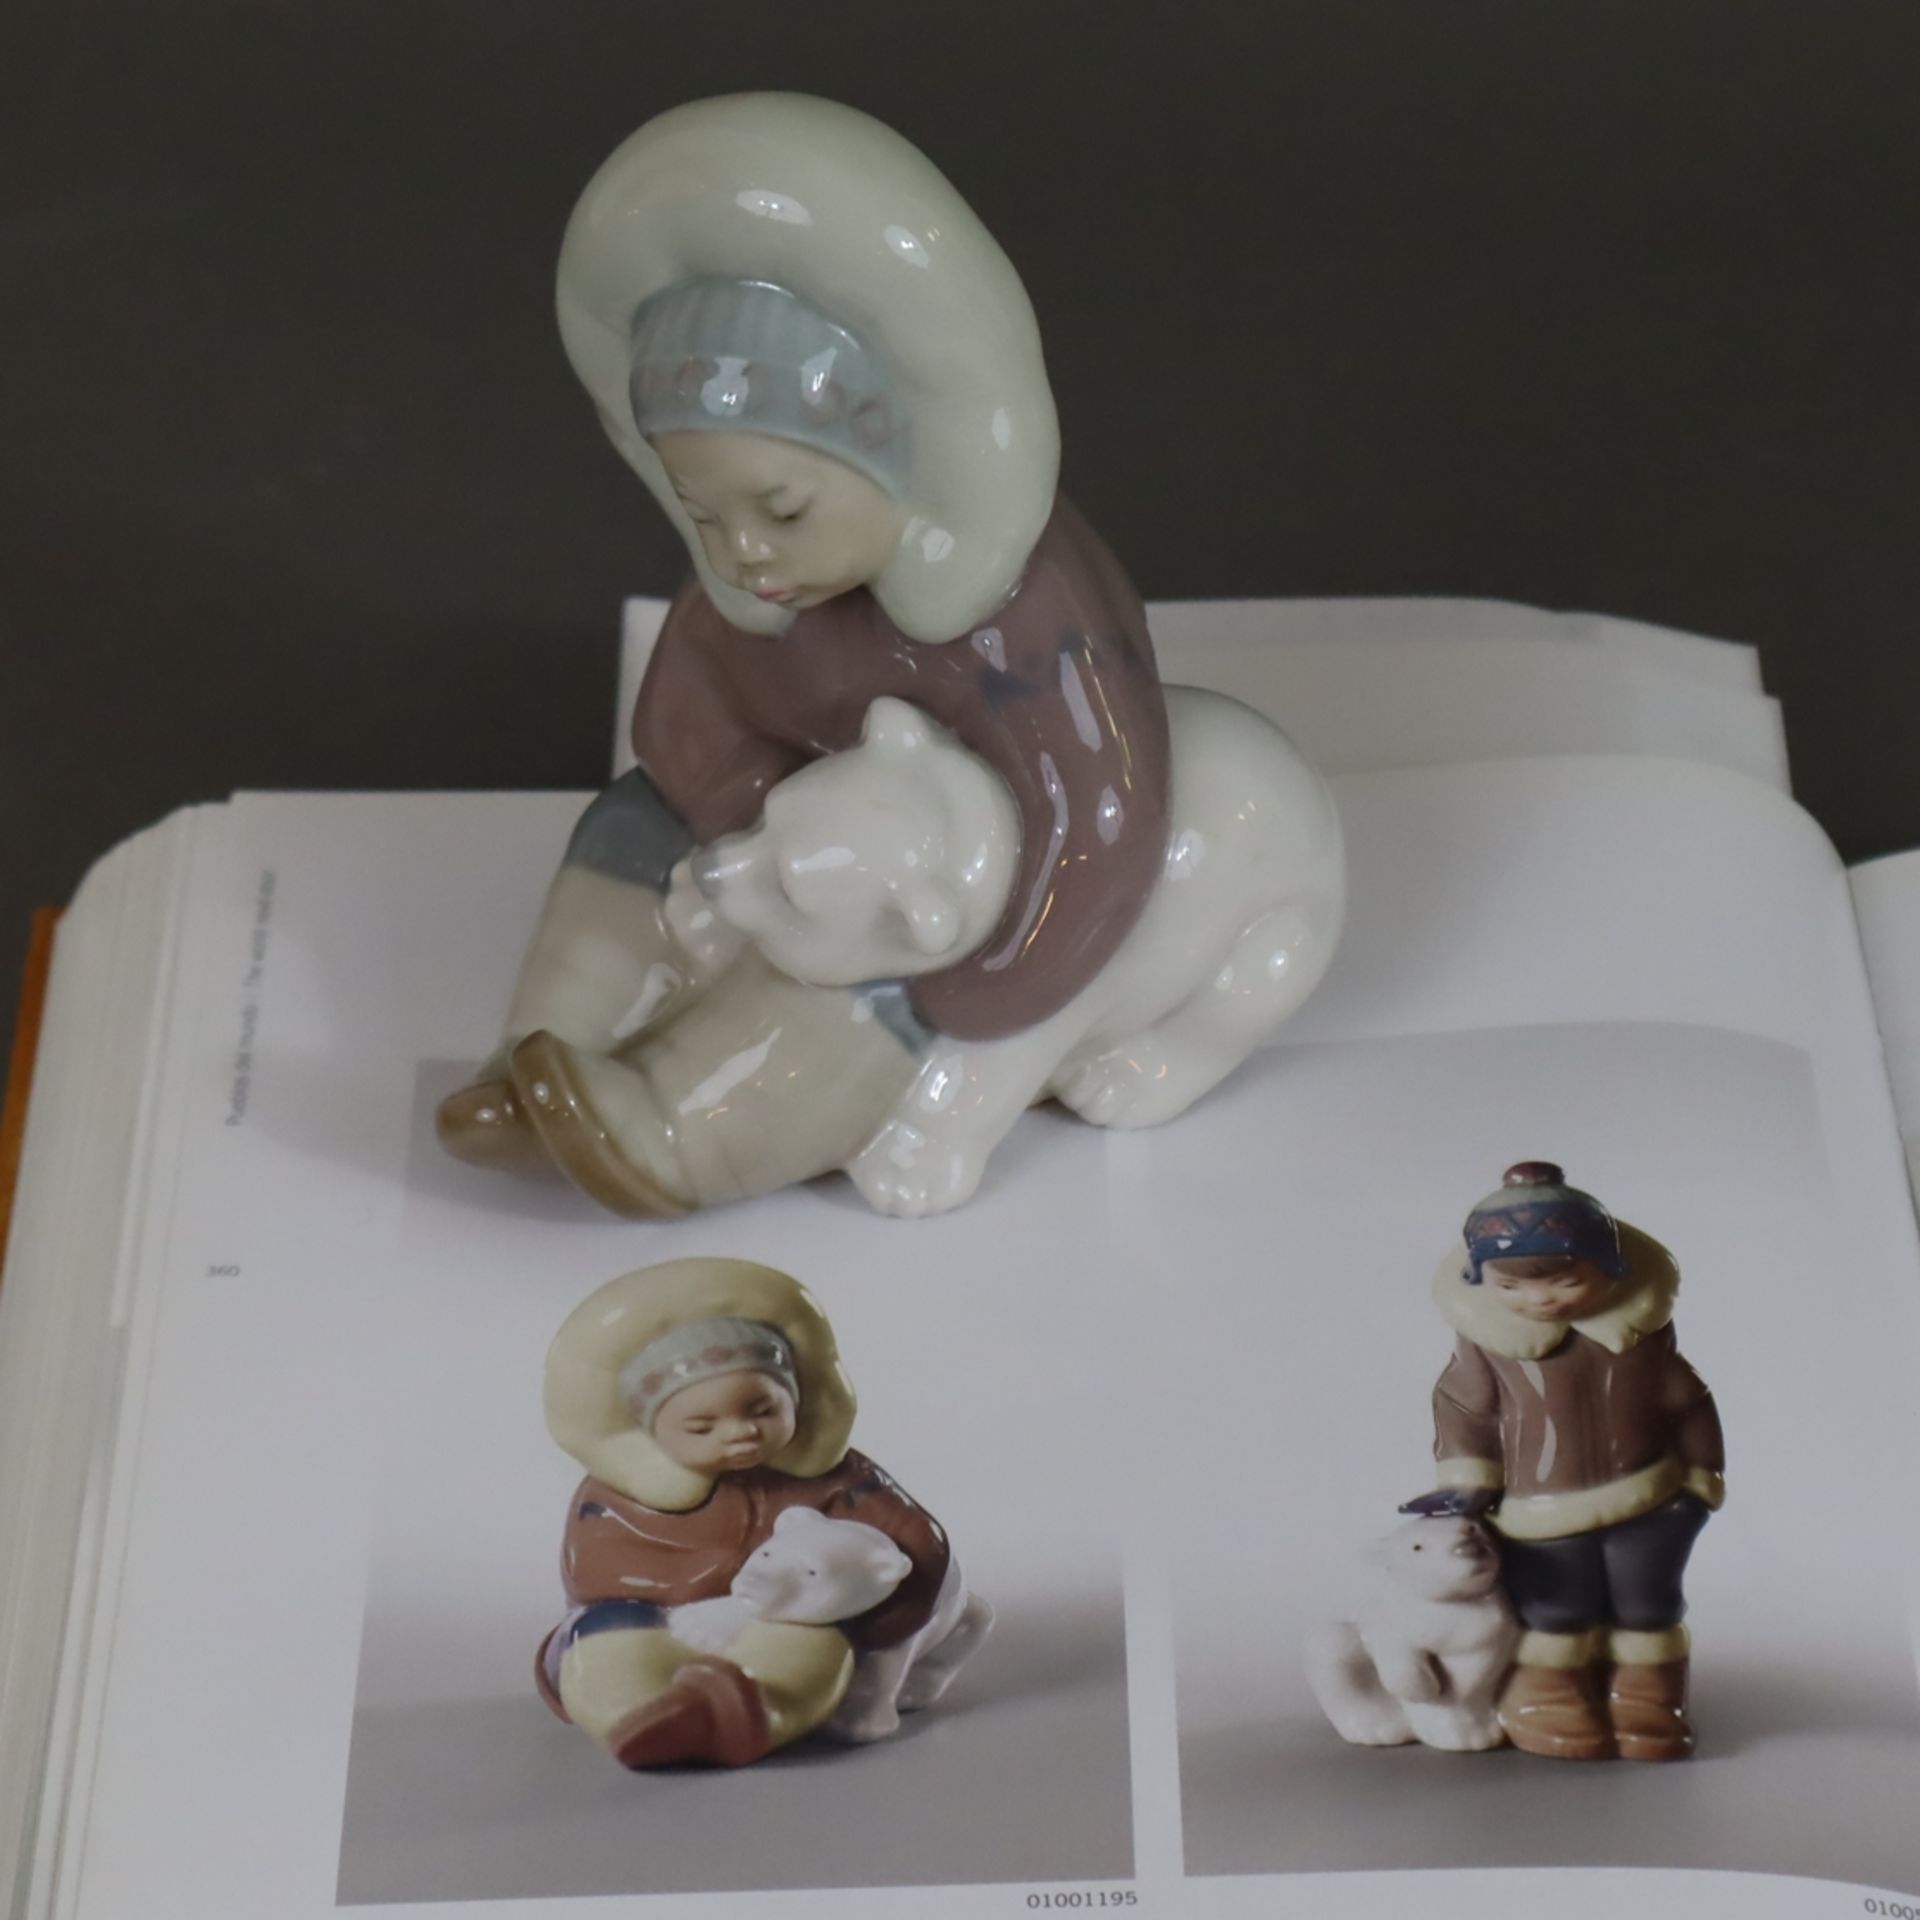 Kinderfigur "Spielendes Inuit-Kind" - Lladro, Spanien, Modellnr. 1195 (Produktion 2007 eingestellt) - Bild 6 aus 6